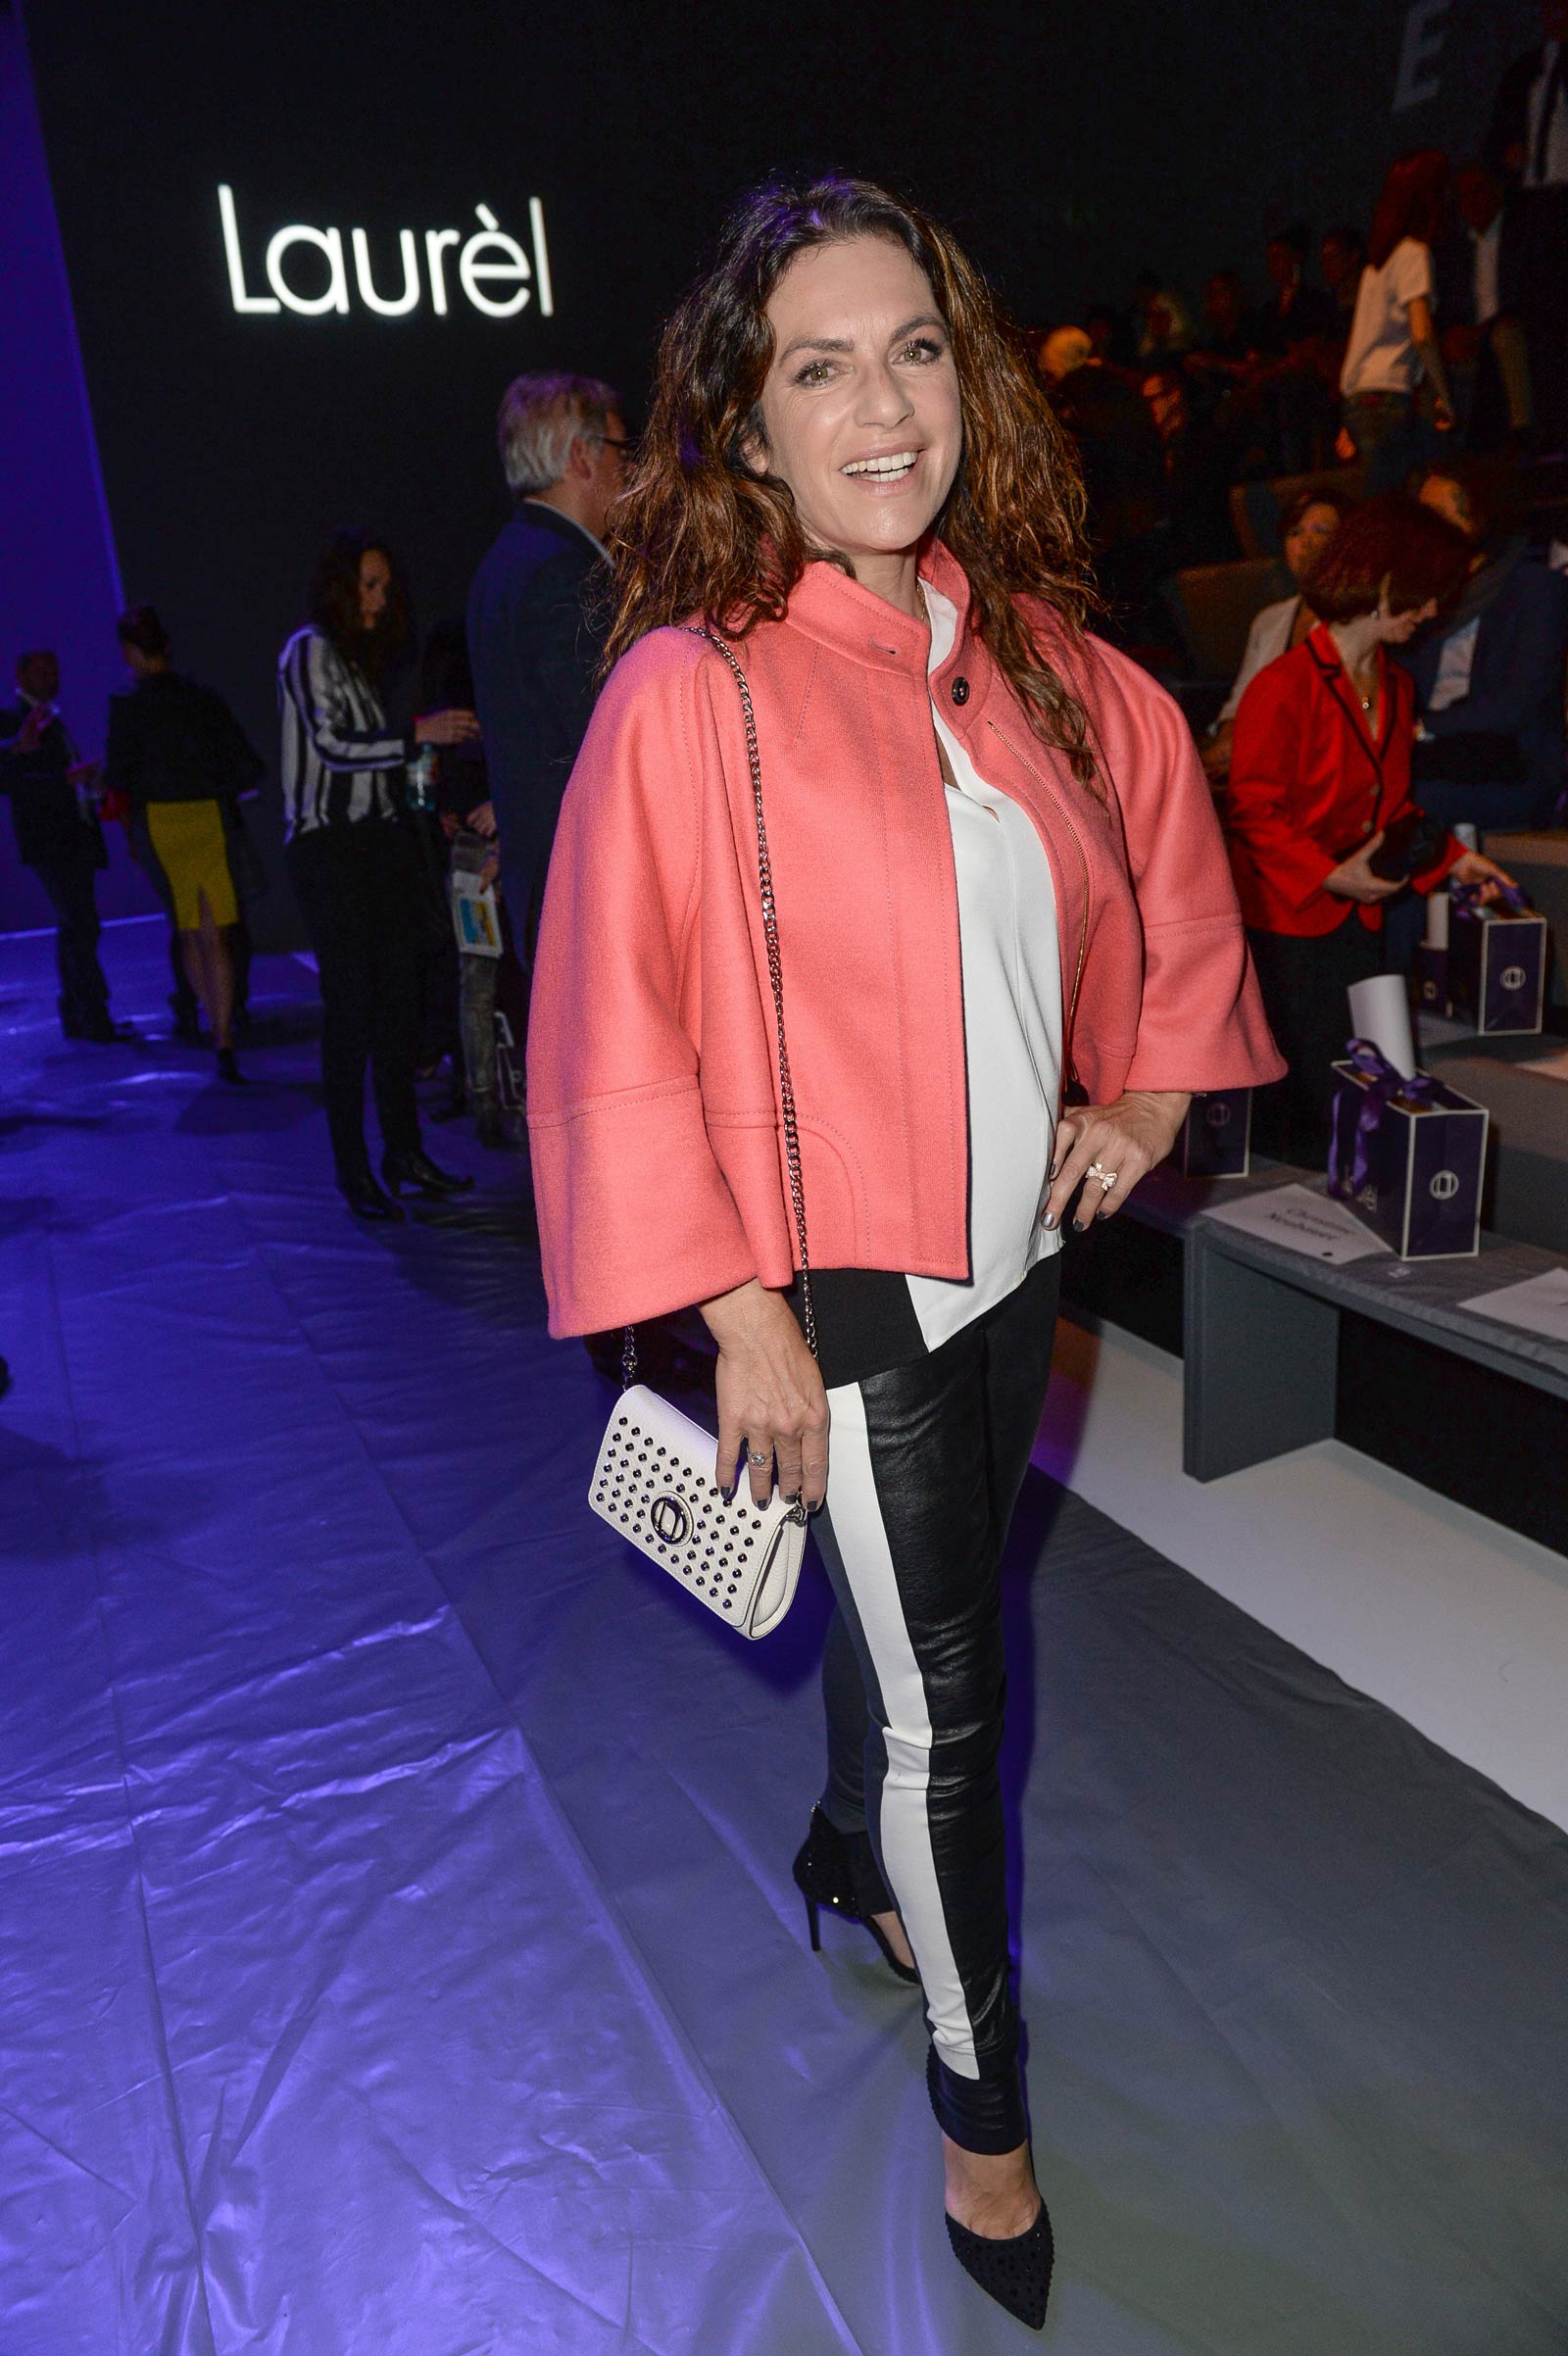 Christine Neubauer attends Merceses Benz Fashion Week